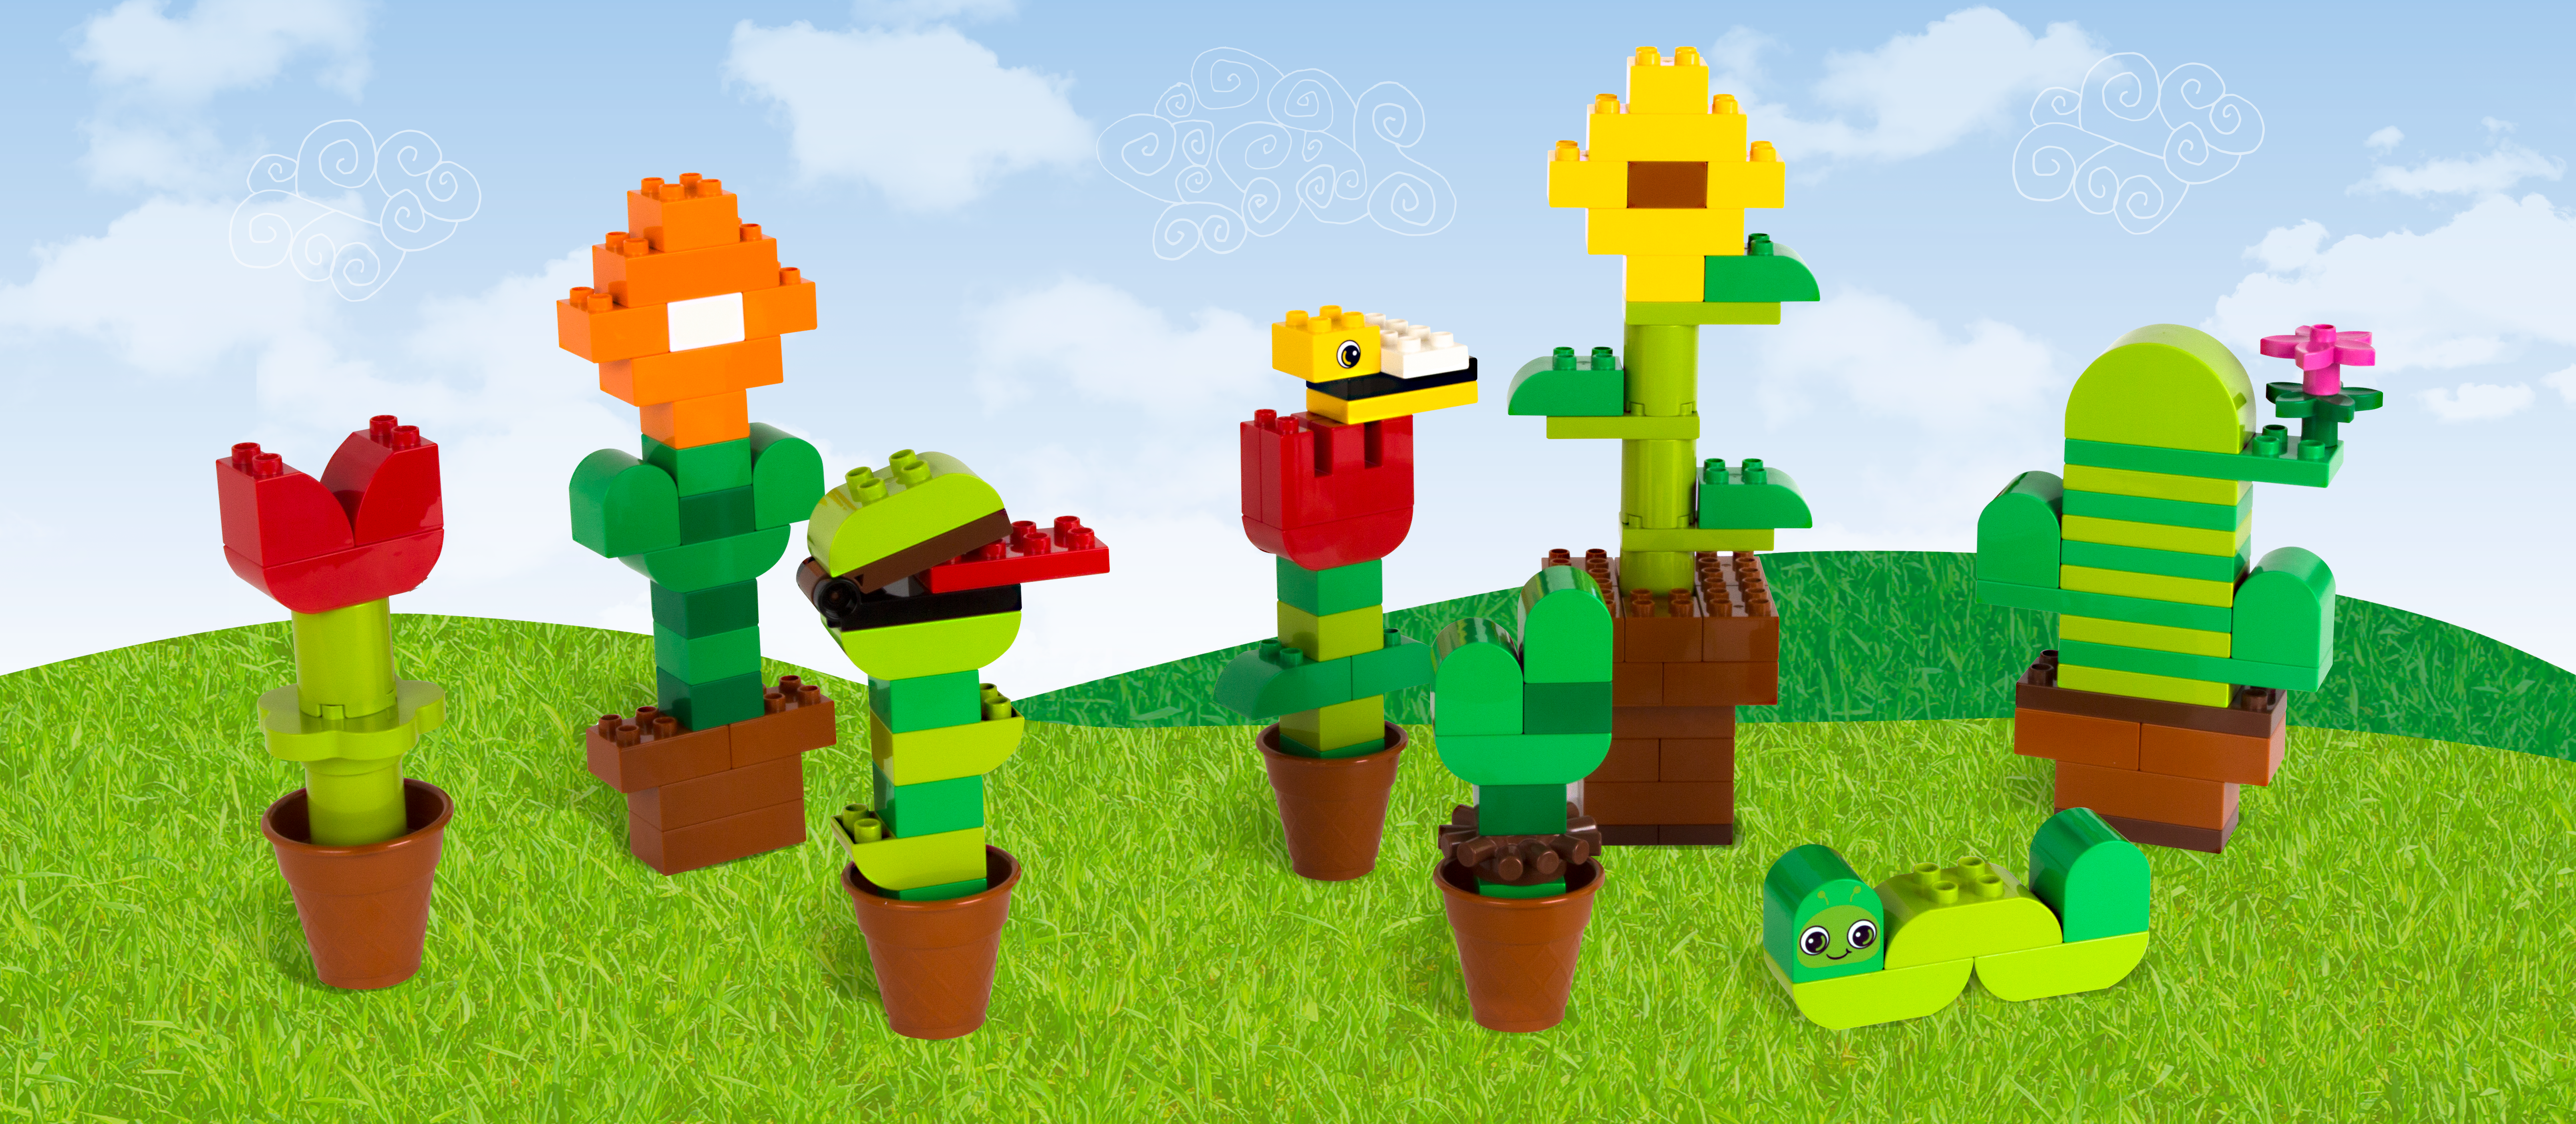 Постройте первое растение вашего малыша из кубиков LEGO DUPLO!